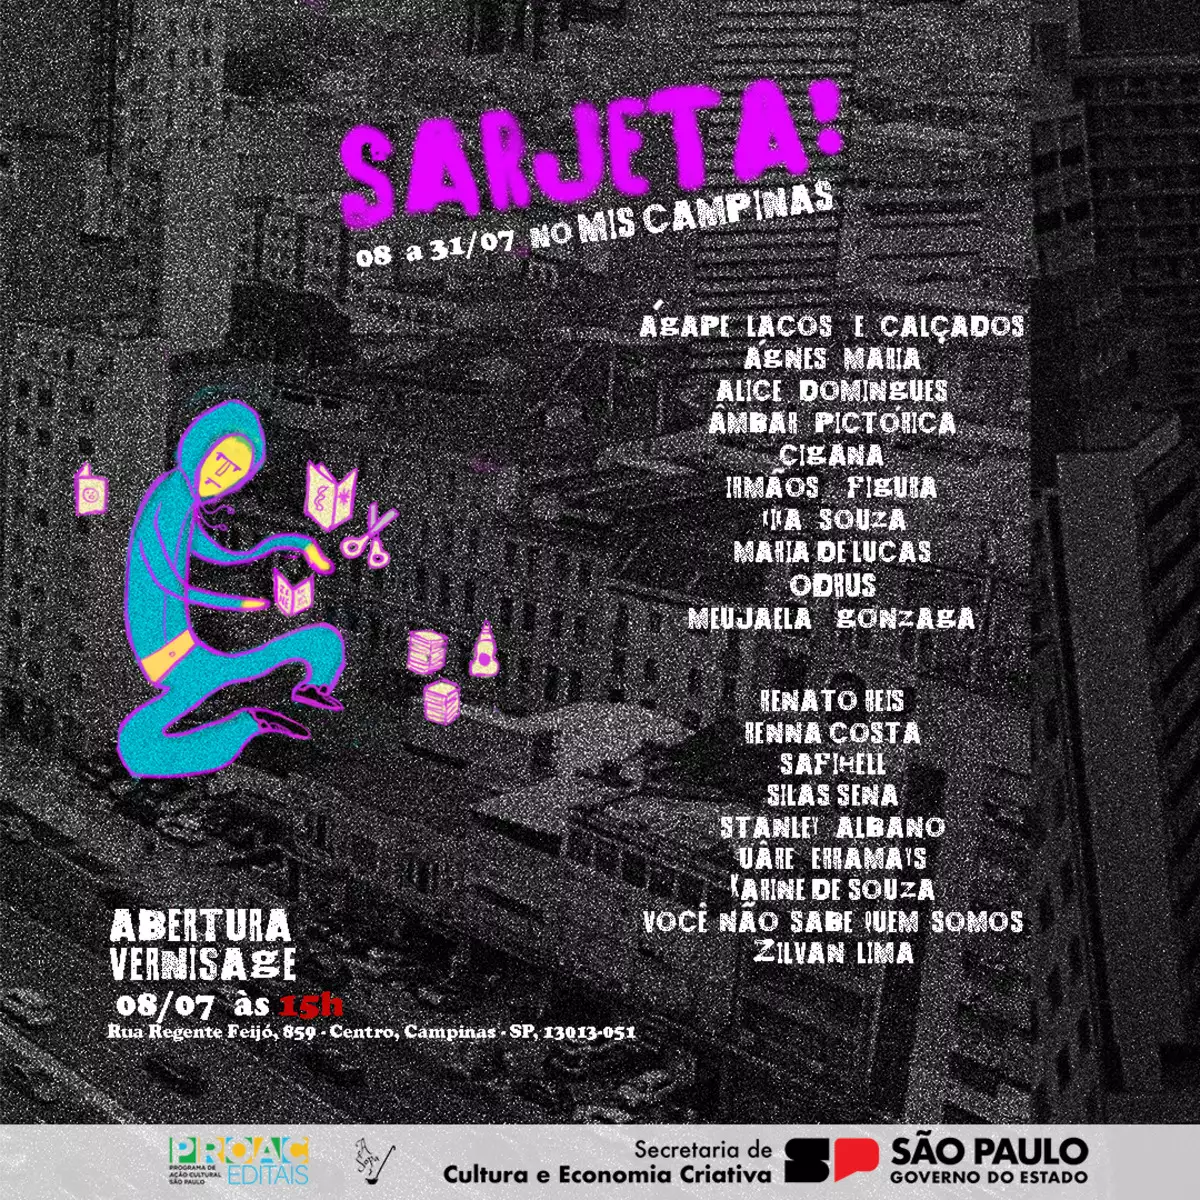 Exposição Sarjeta estreia dia 8 de julho no MIS